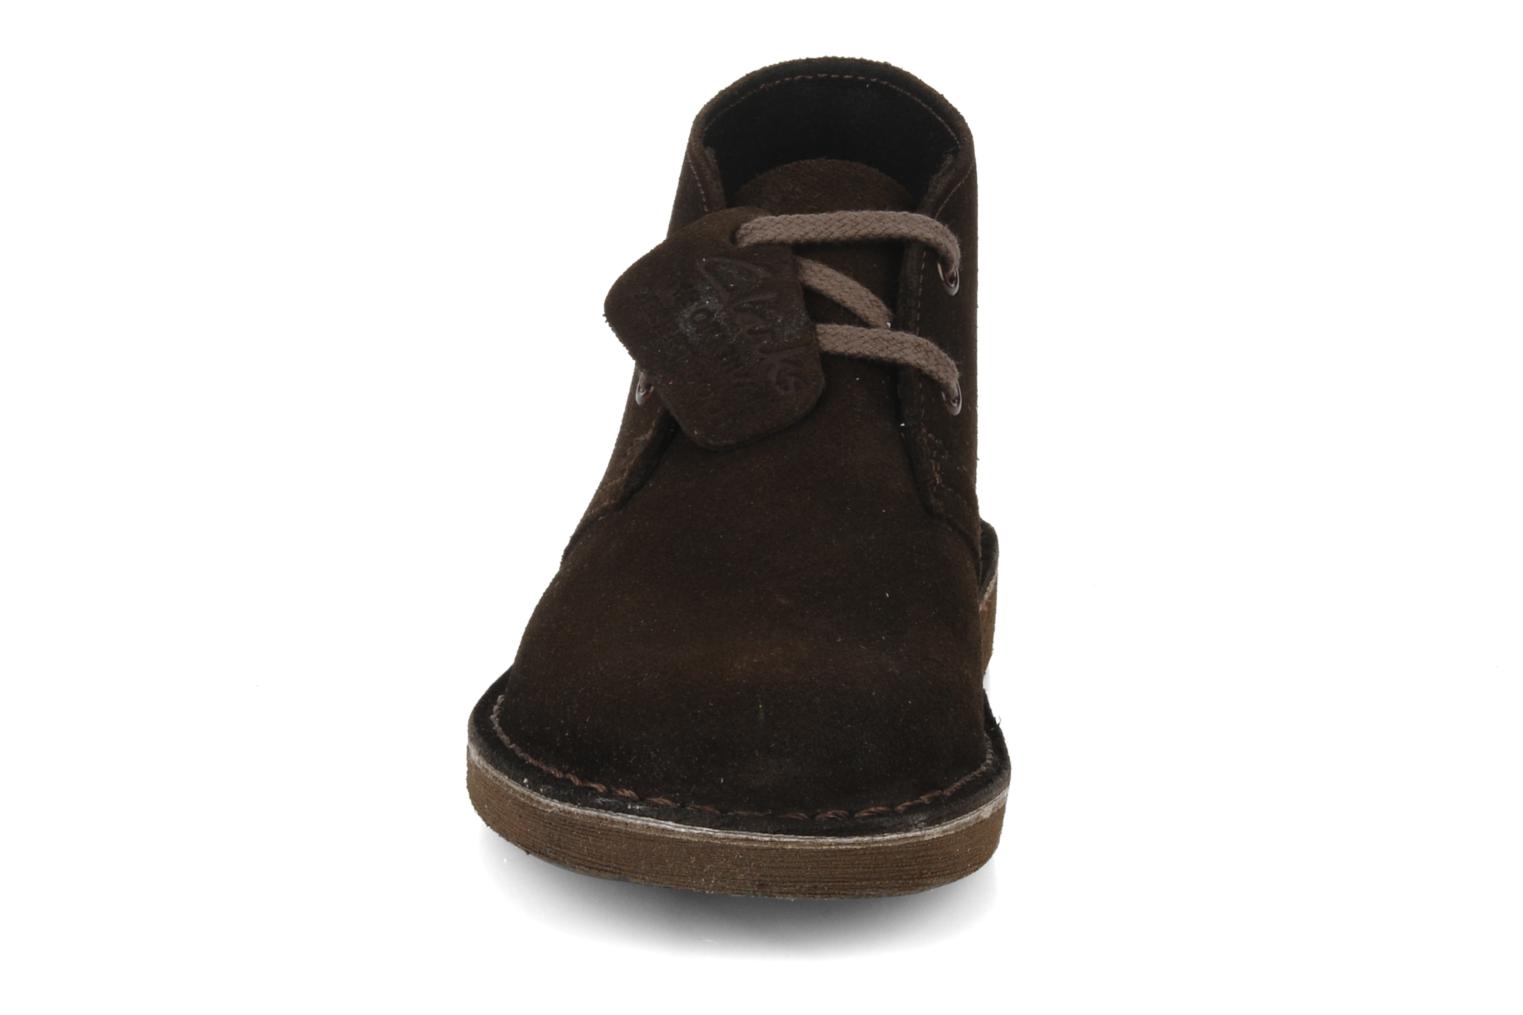 ... Boot Junior (Marron) - Chaussures Ã  lacets chez Sarenza (65434